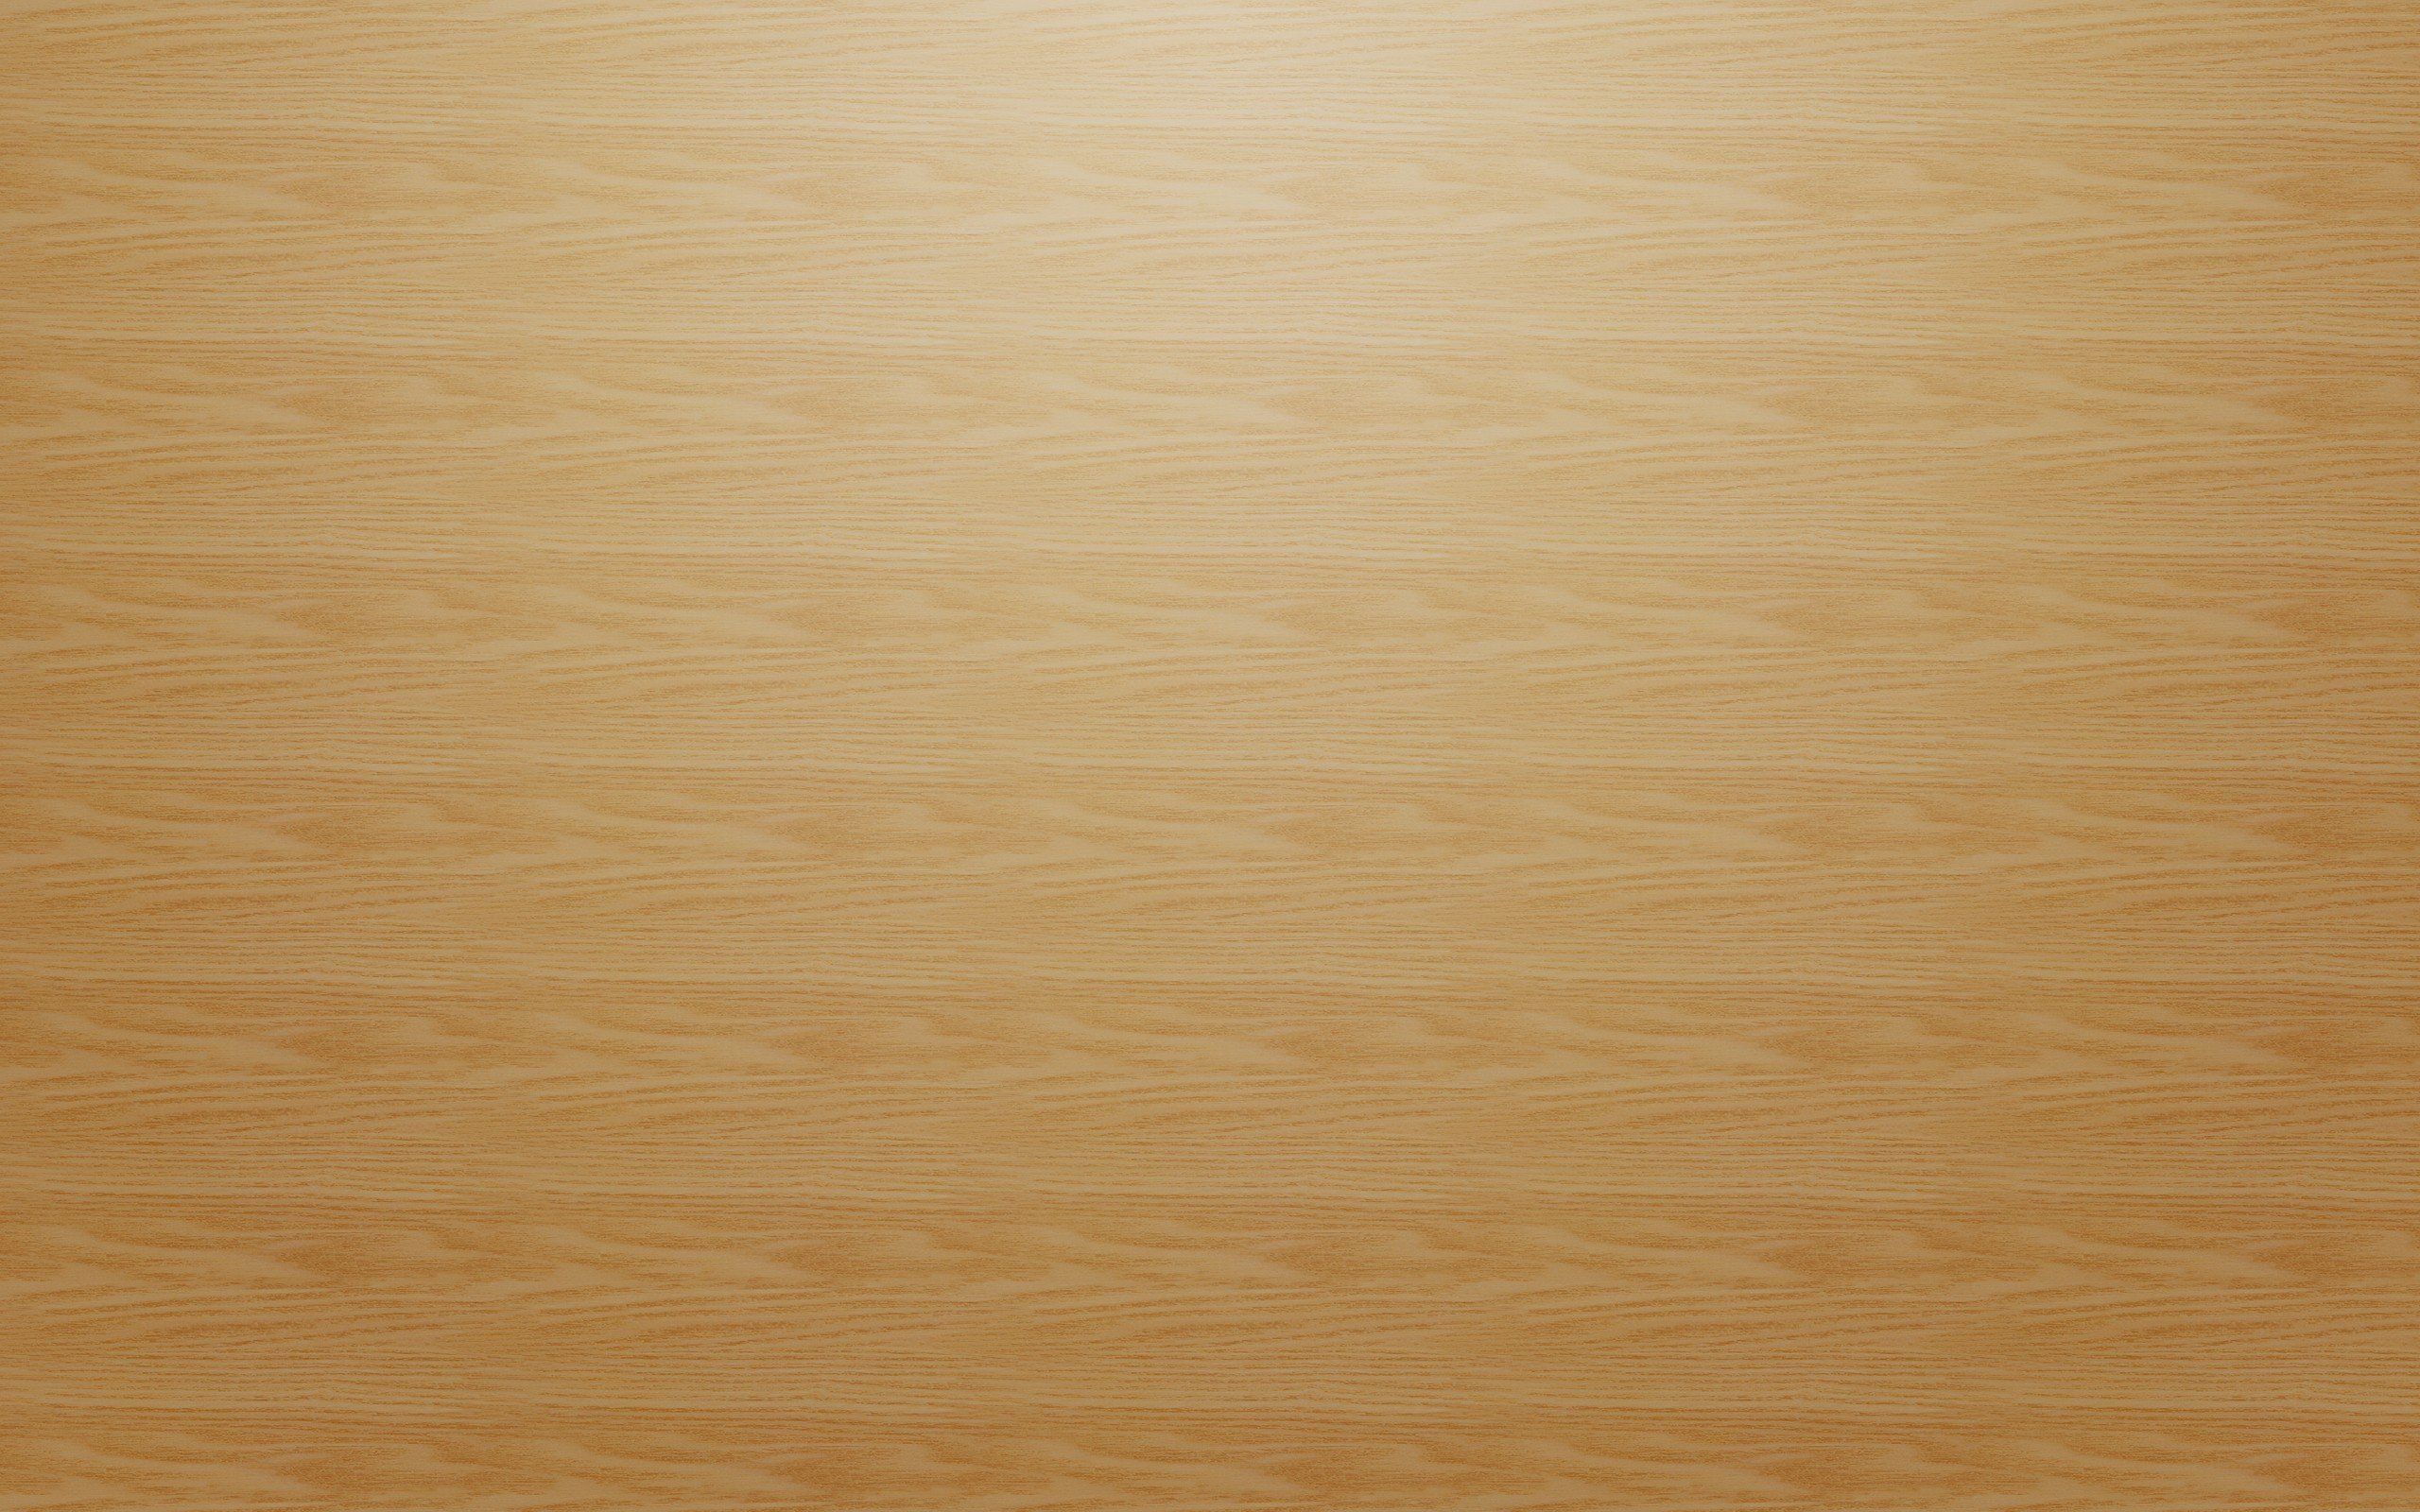 Light floor wood patterns wallpaper .wallpaperup.com